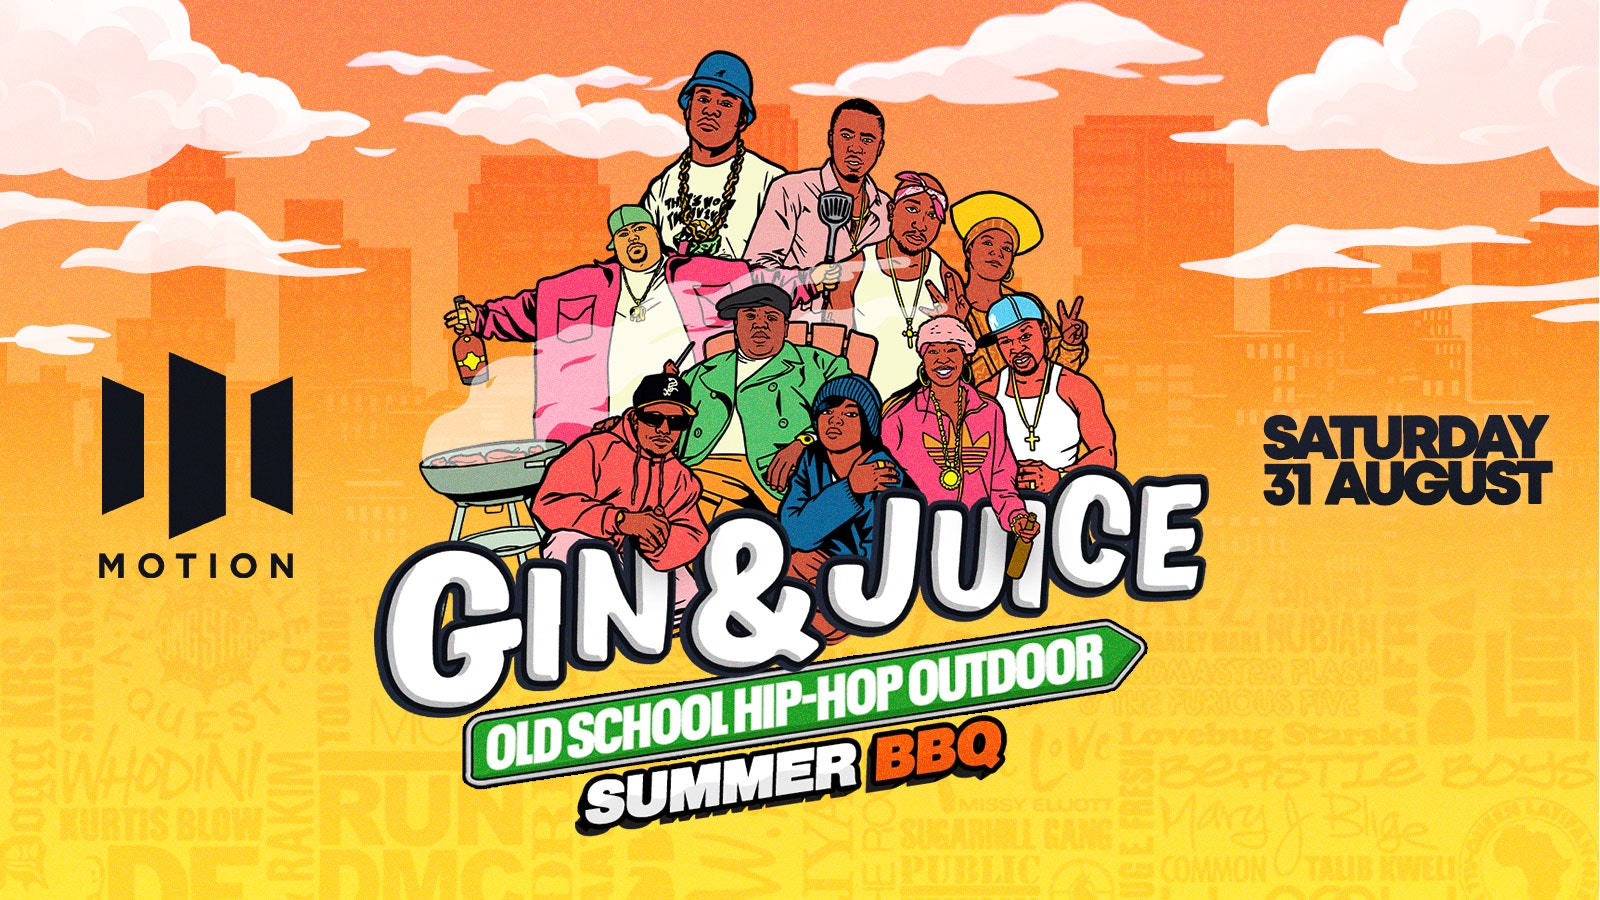 Old School Hip-Hop Outdoor Summer BBQ @ Motion Bristol